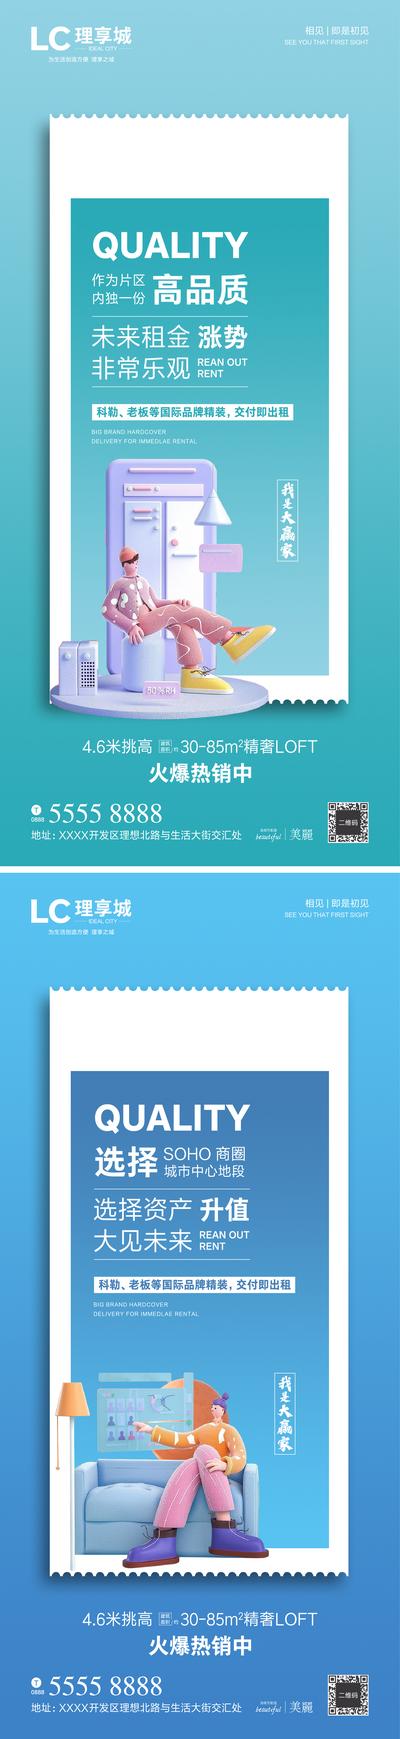 南门网 地产LOFT公寓卖点海报系列